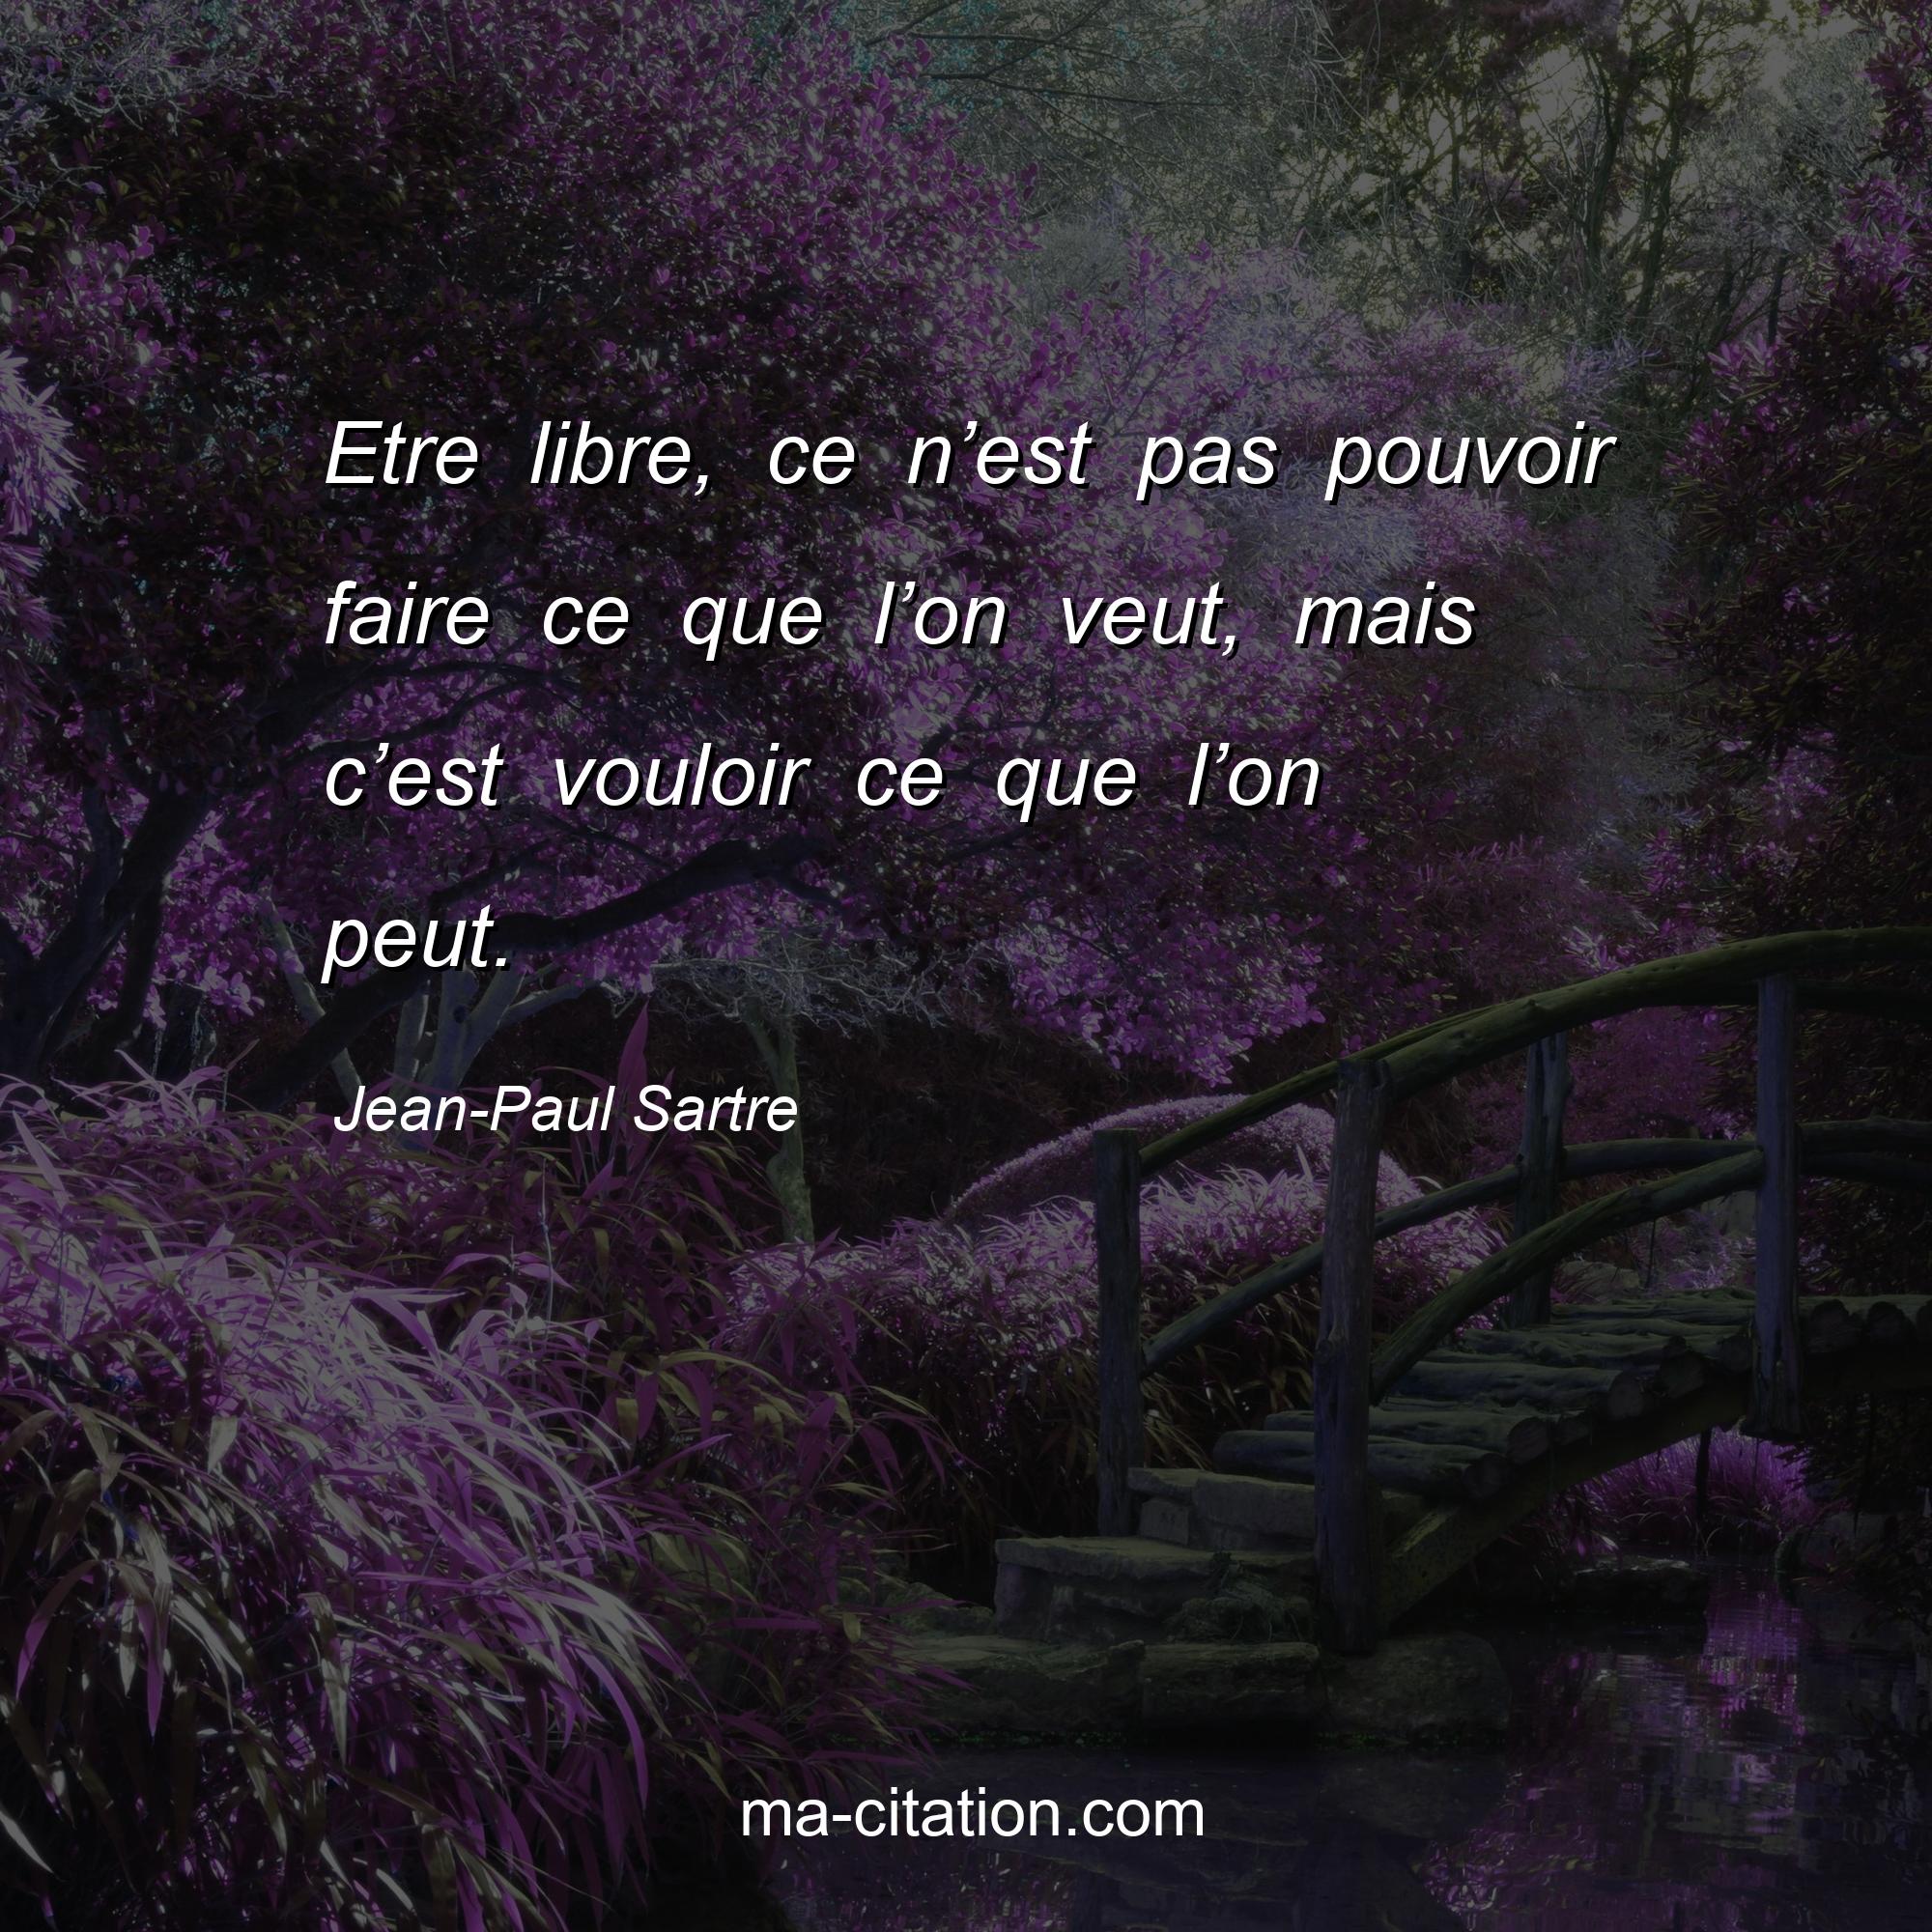 Jean-Paul Sartre : Etre libre, ce n’est pas pouvoir faire ce que l’on veut, mais c’est vouloir ce que l’on peut.